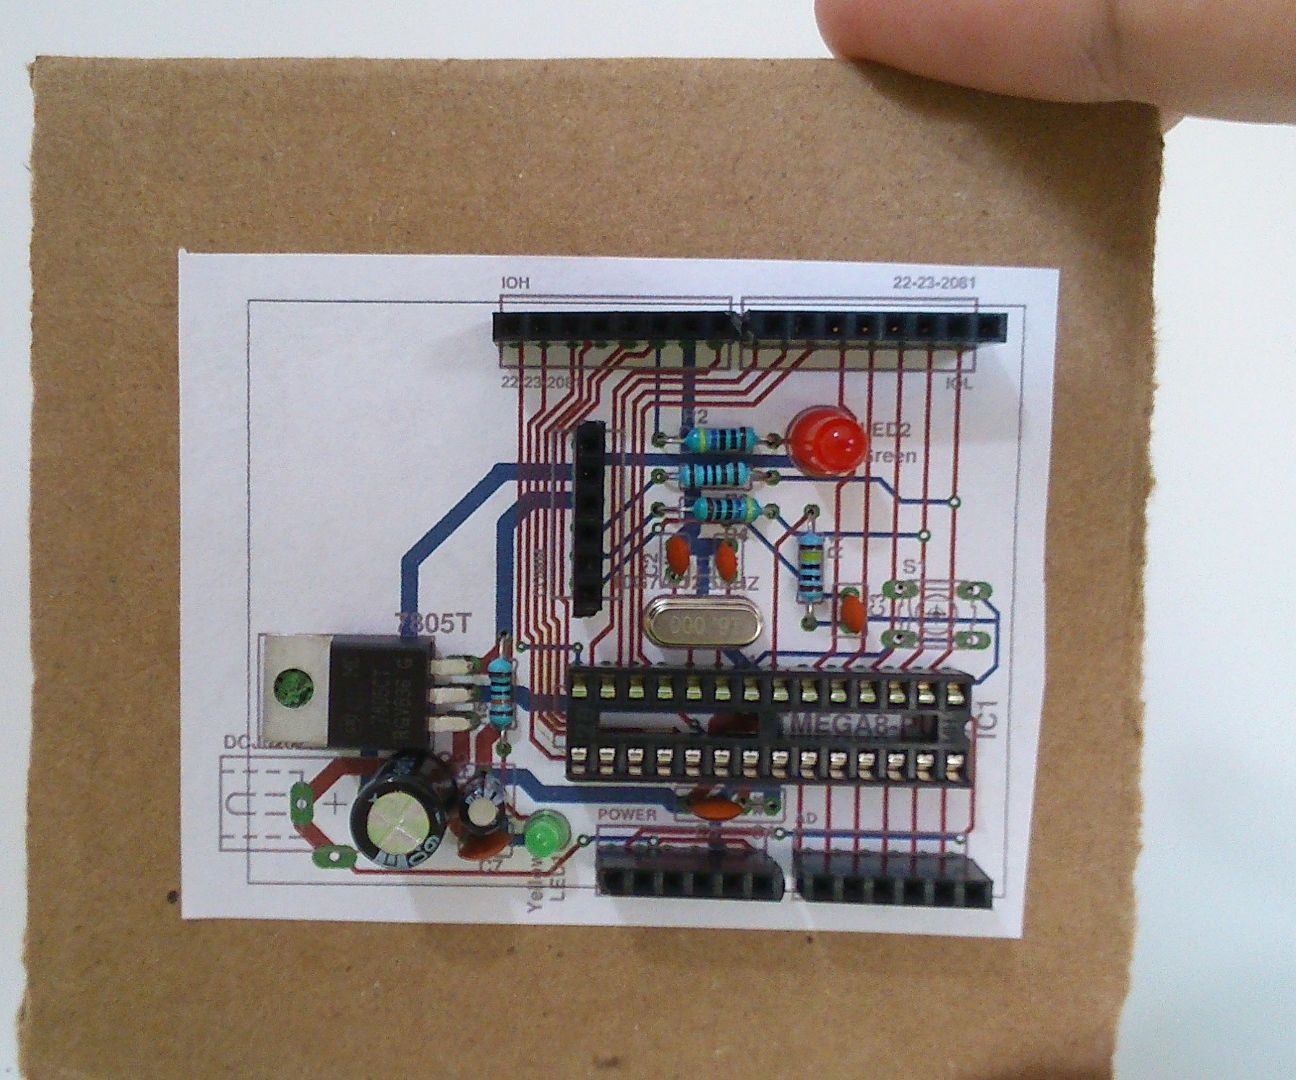 PCB Mockup Prototype in Cardboard